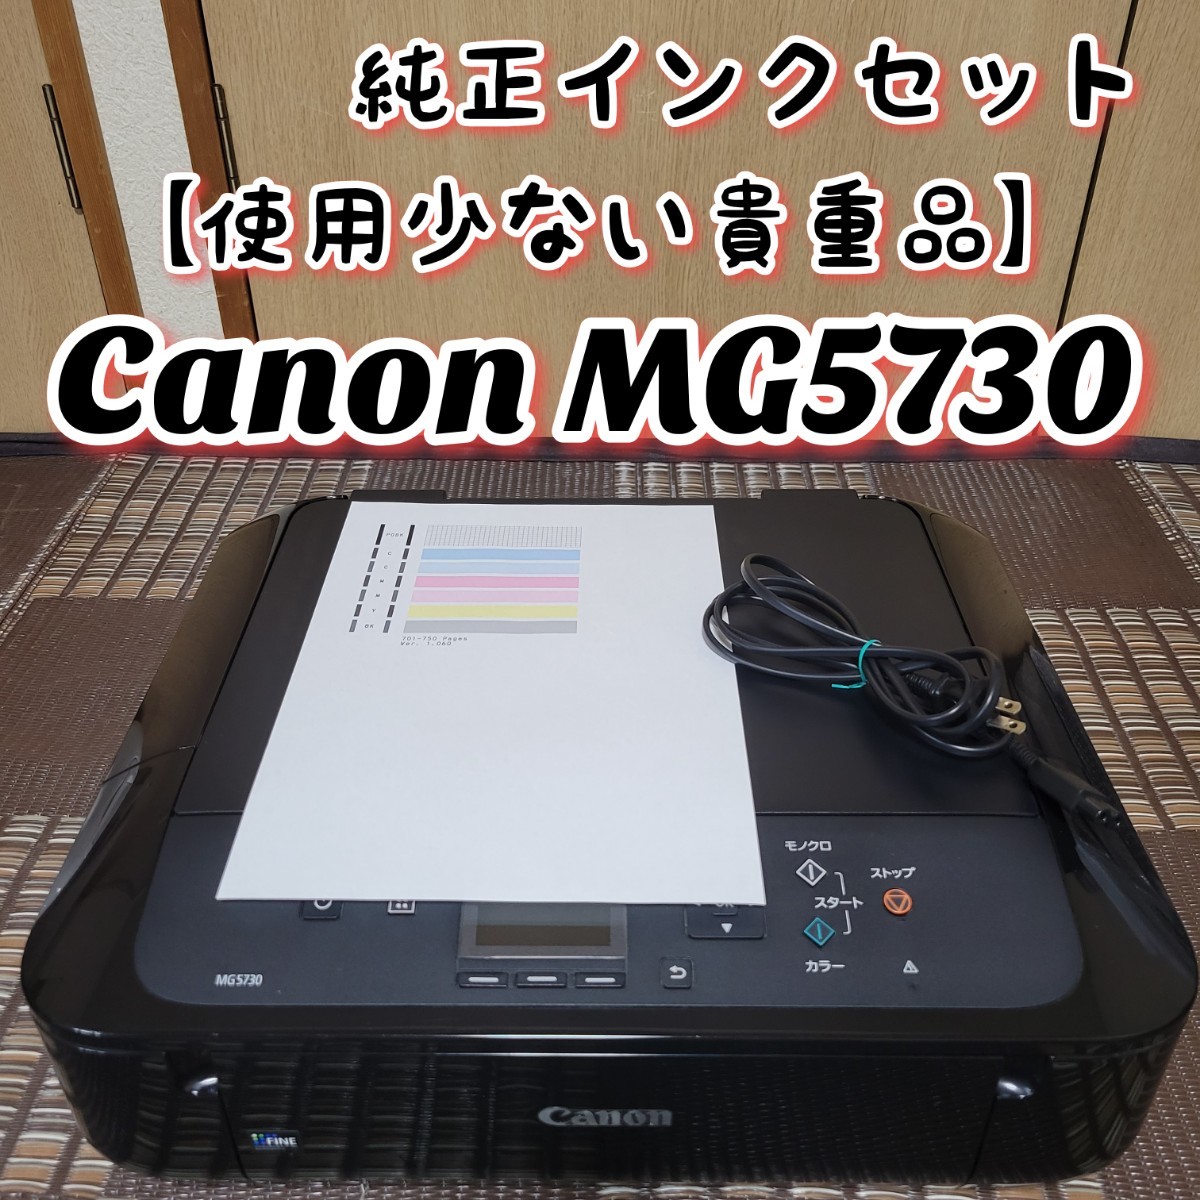 使用少ない貴重品】 Canon キヤノン PIXUS MG5730BK インクジェット